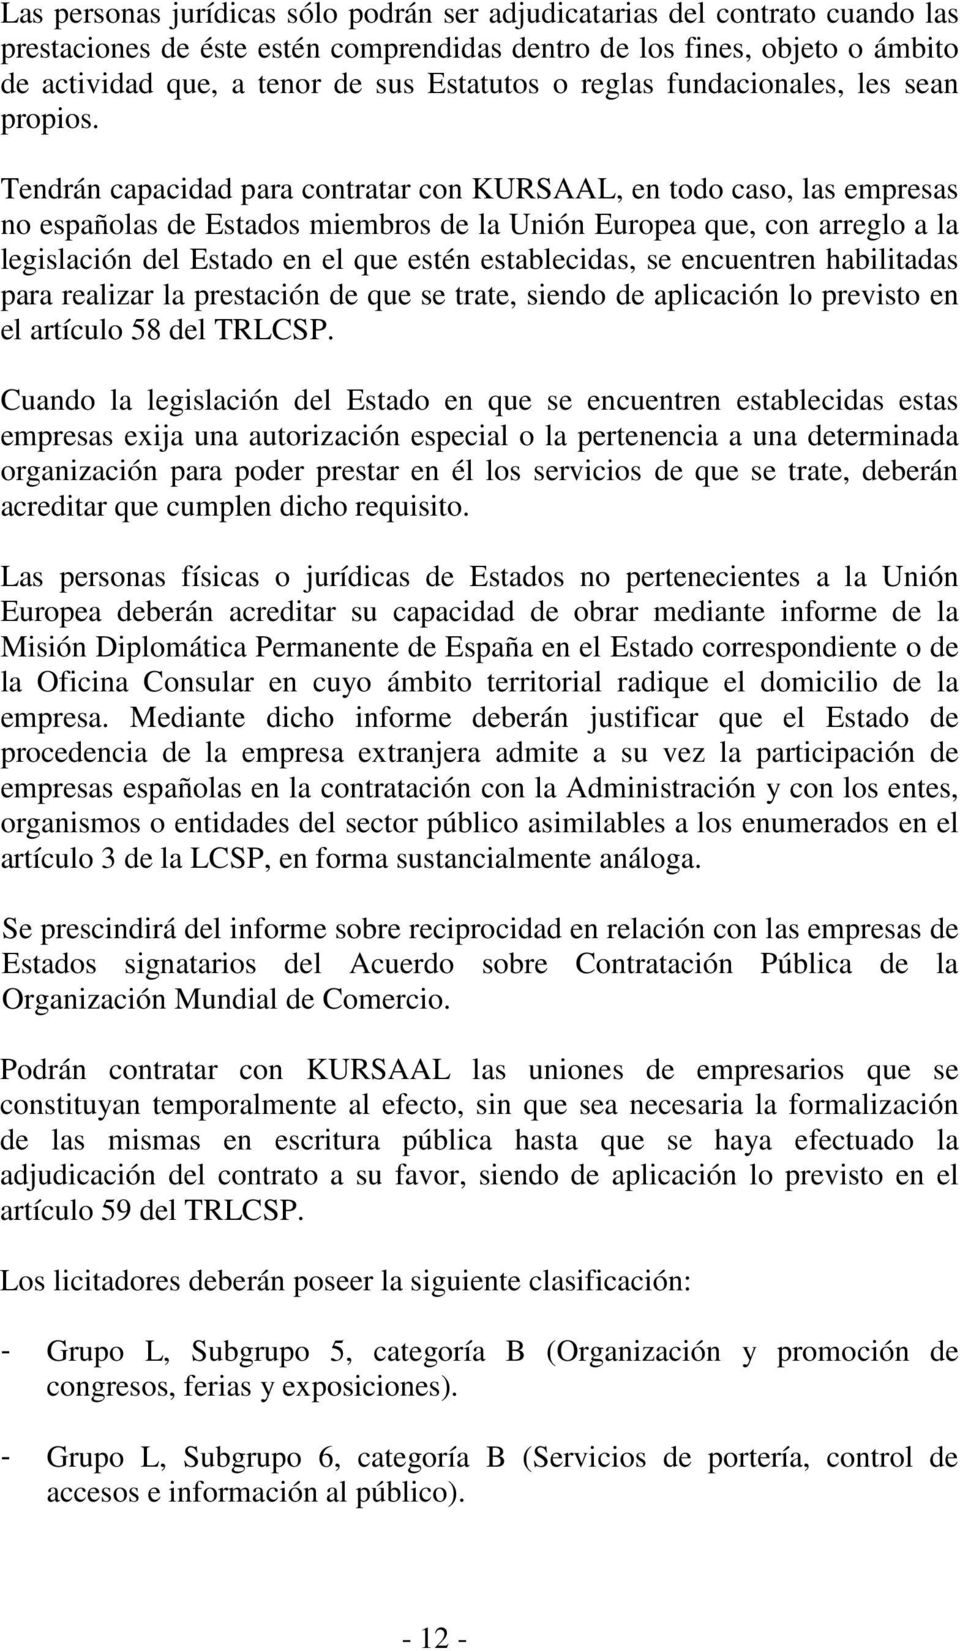 Tendrán capacidad para contratar con KURSAAL, en todo caso, las empresas no españolas de Estados miembros de la Unión Europea que, con arreglo a la legislación del Estado en el que estén